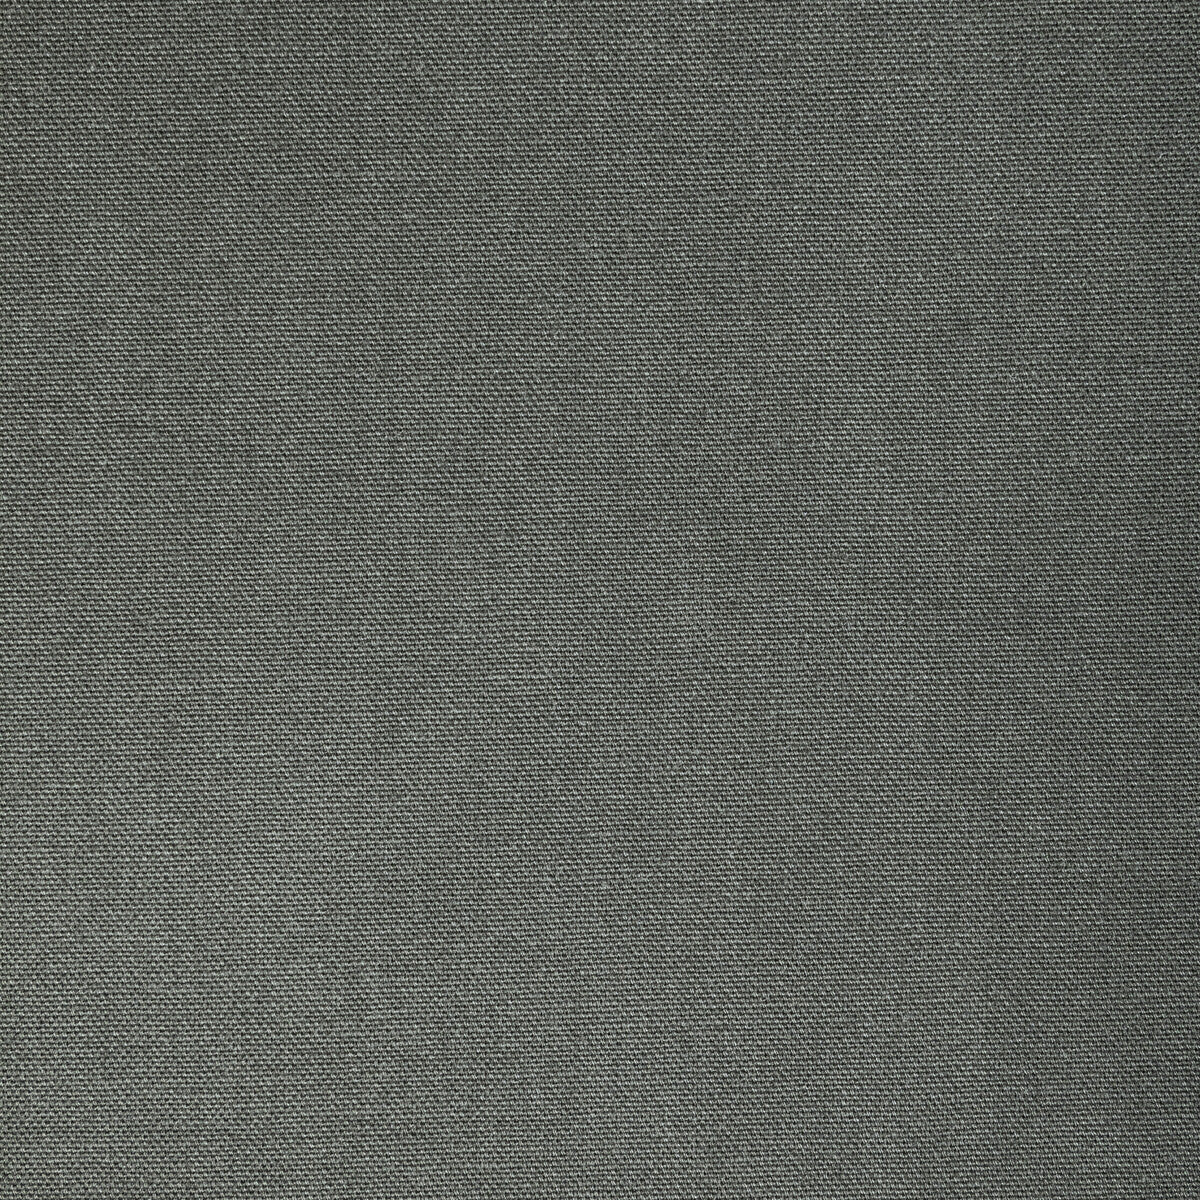 Kravet Basics fabric in 36656-1121 color - pattern 36656.1121.0 - by Kravet Basics